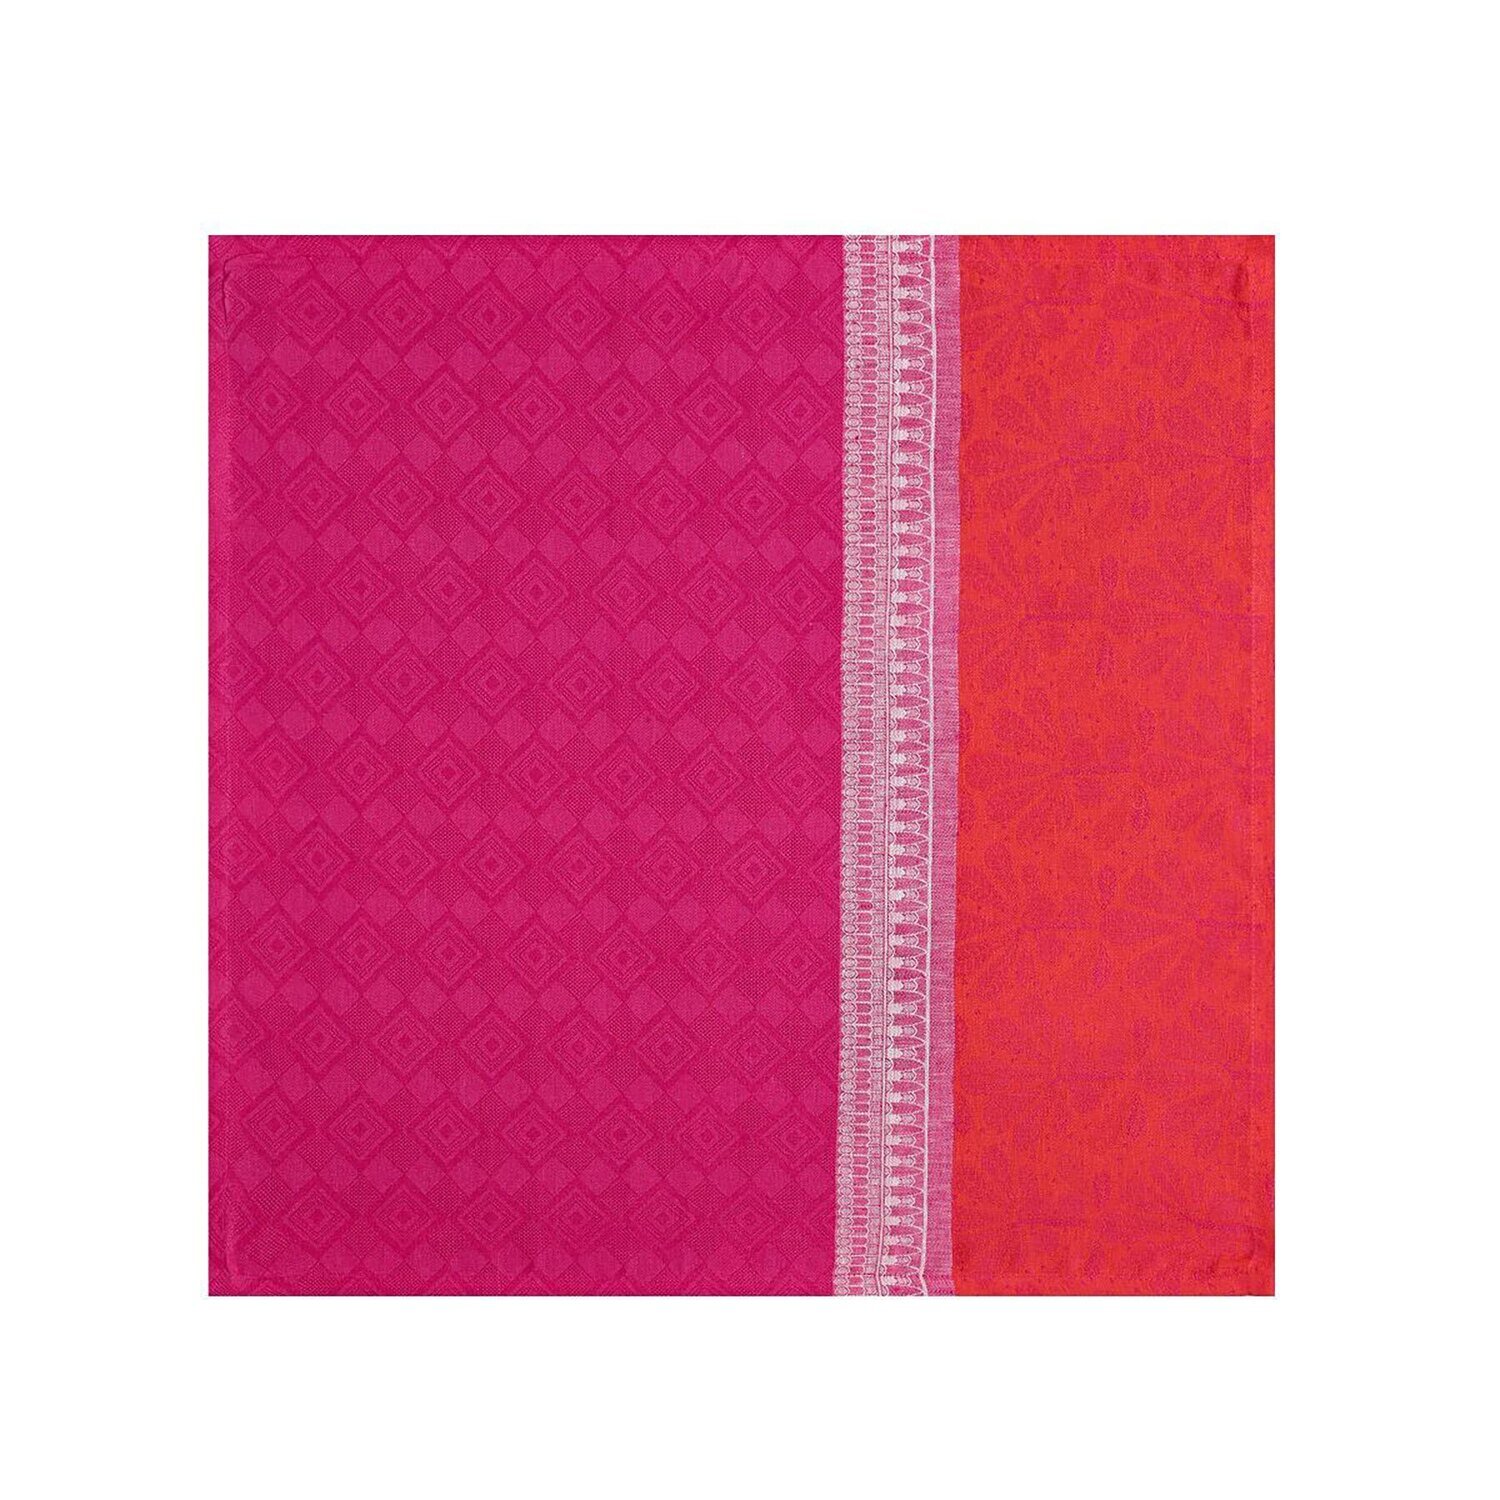 Le Jacquard Francais Tablecloth Croisiere Nil Pink 100% Linen 26750